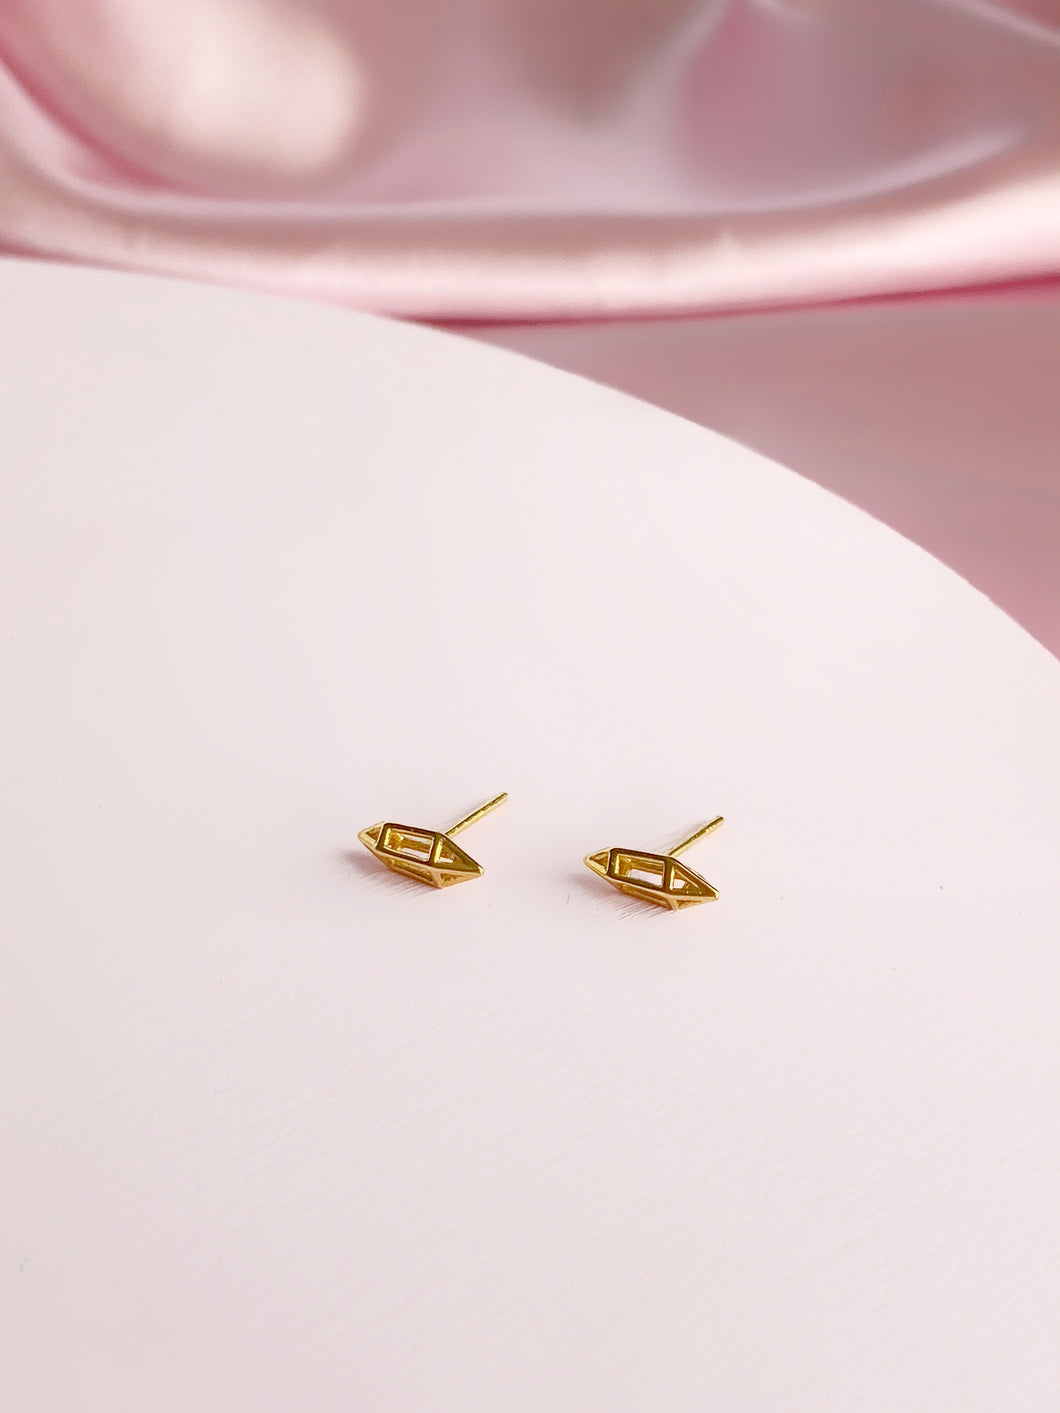 Lil Bit Stud Earrings in 18K Gold Plated Brass